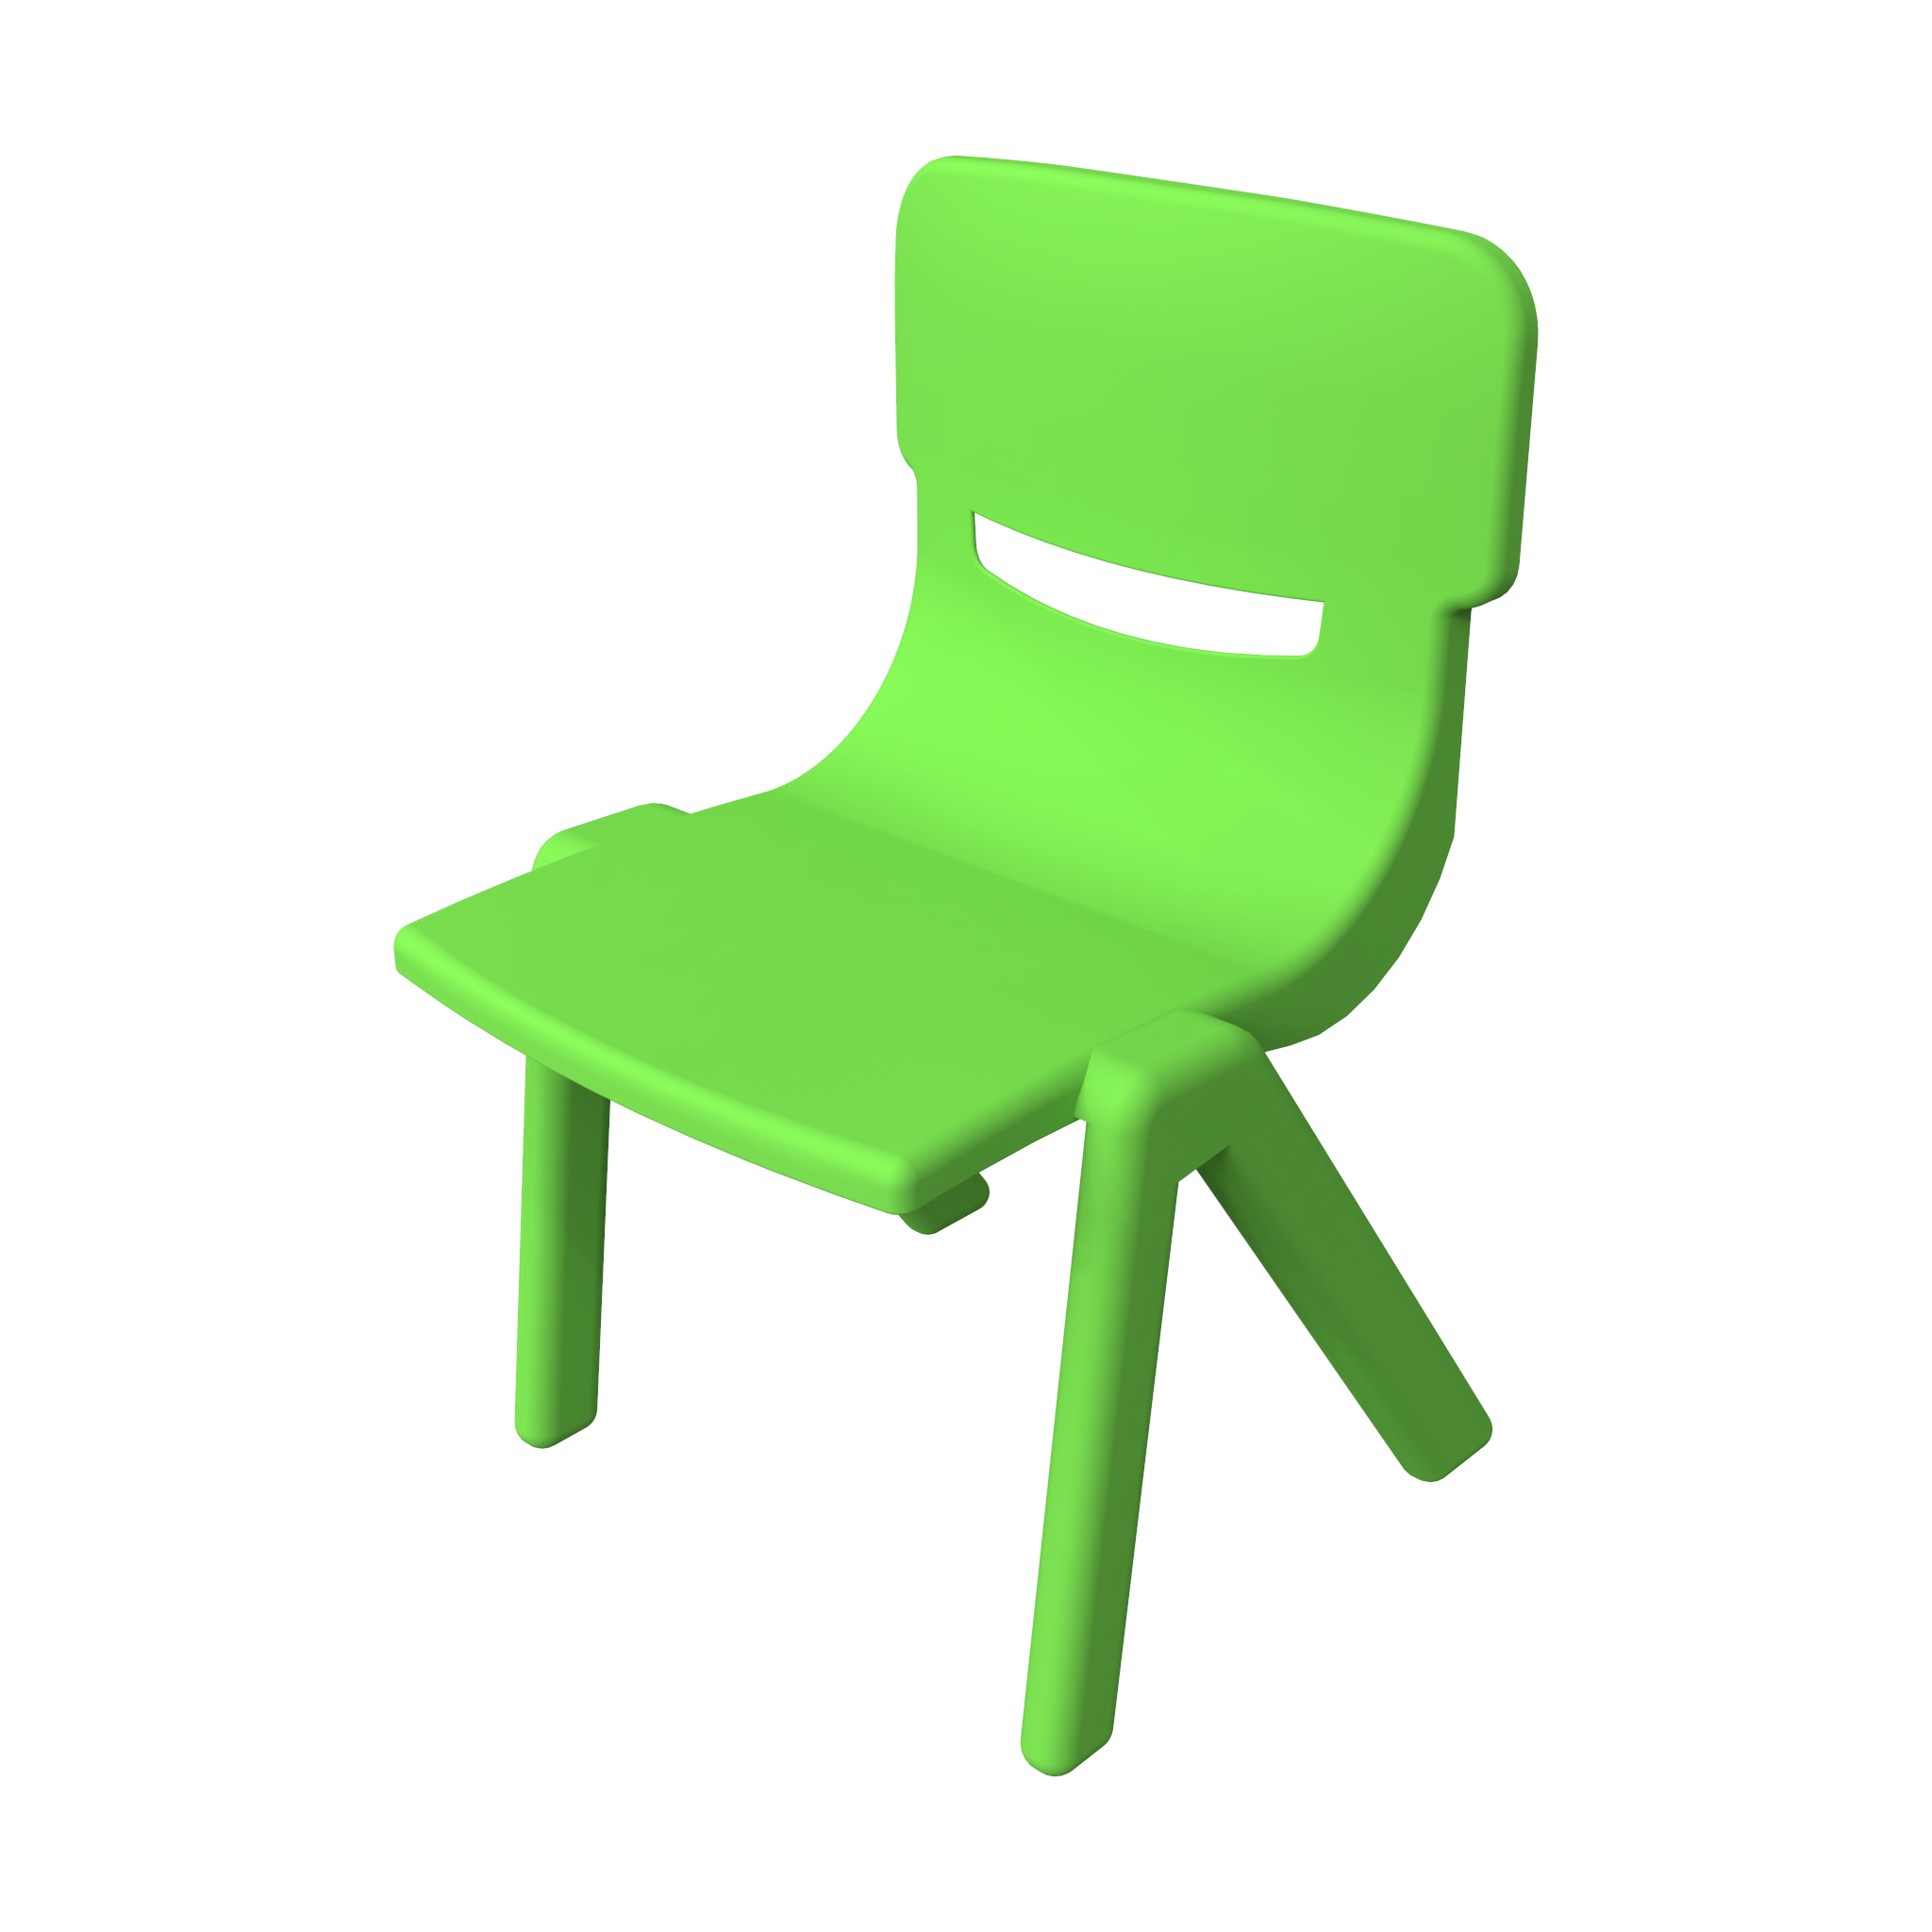 Dieses Bild zeigt eine Kindermöbel Fun chair Green